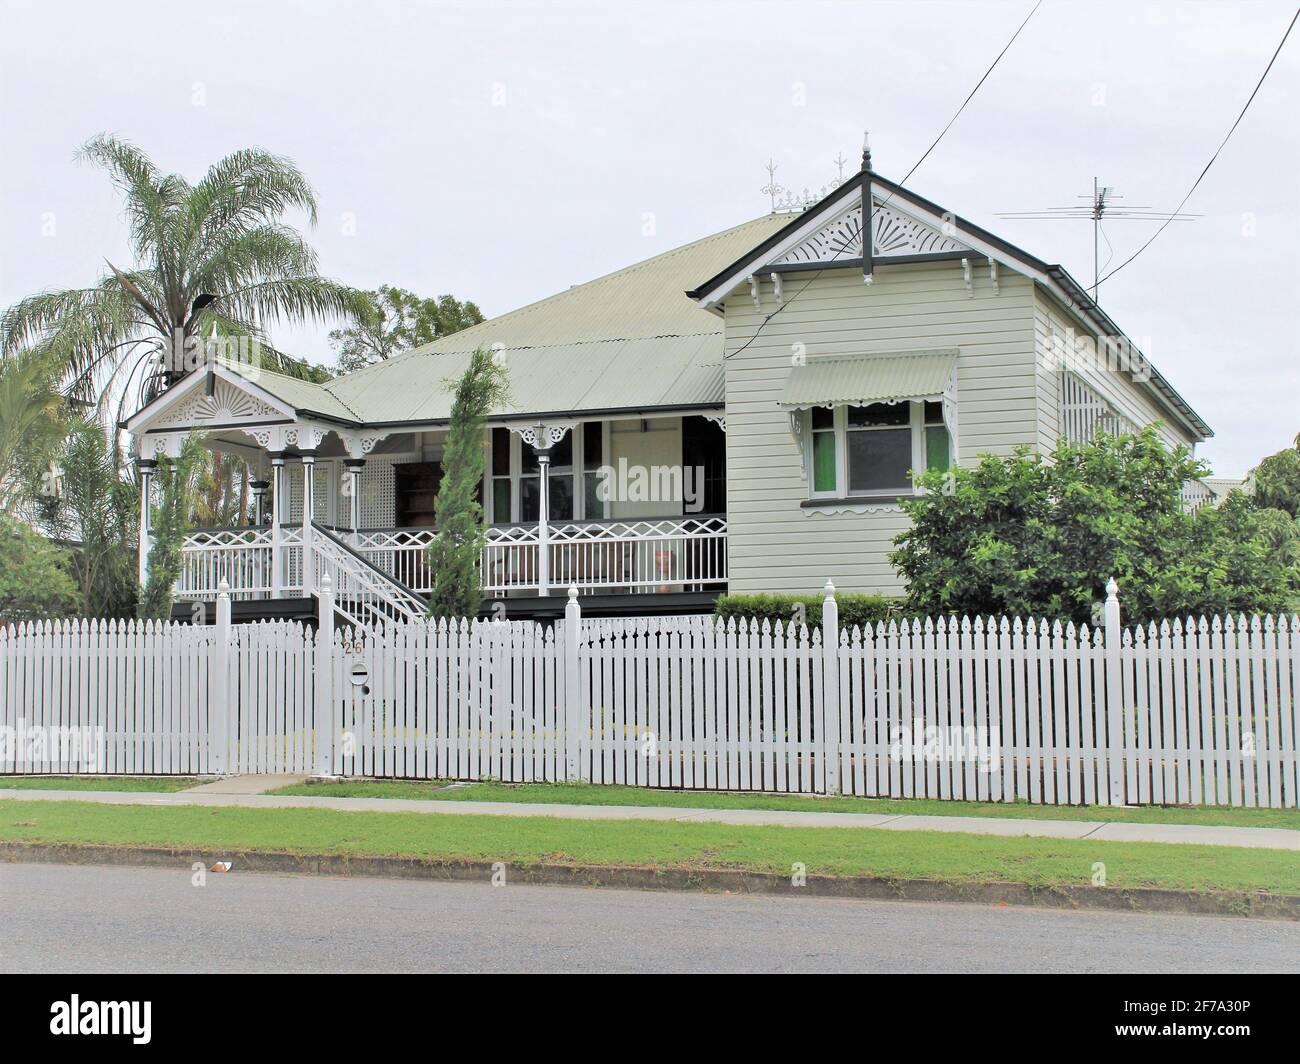 Estilos de Vivienda Australianos, Queenslander House, Arquitectura Vernacular Australiana, Una Casa Queenslander a lo largo de Harlin Road, Ipswich. Foto de stock